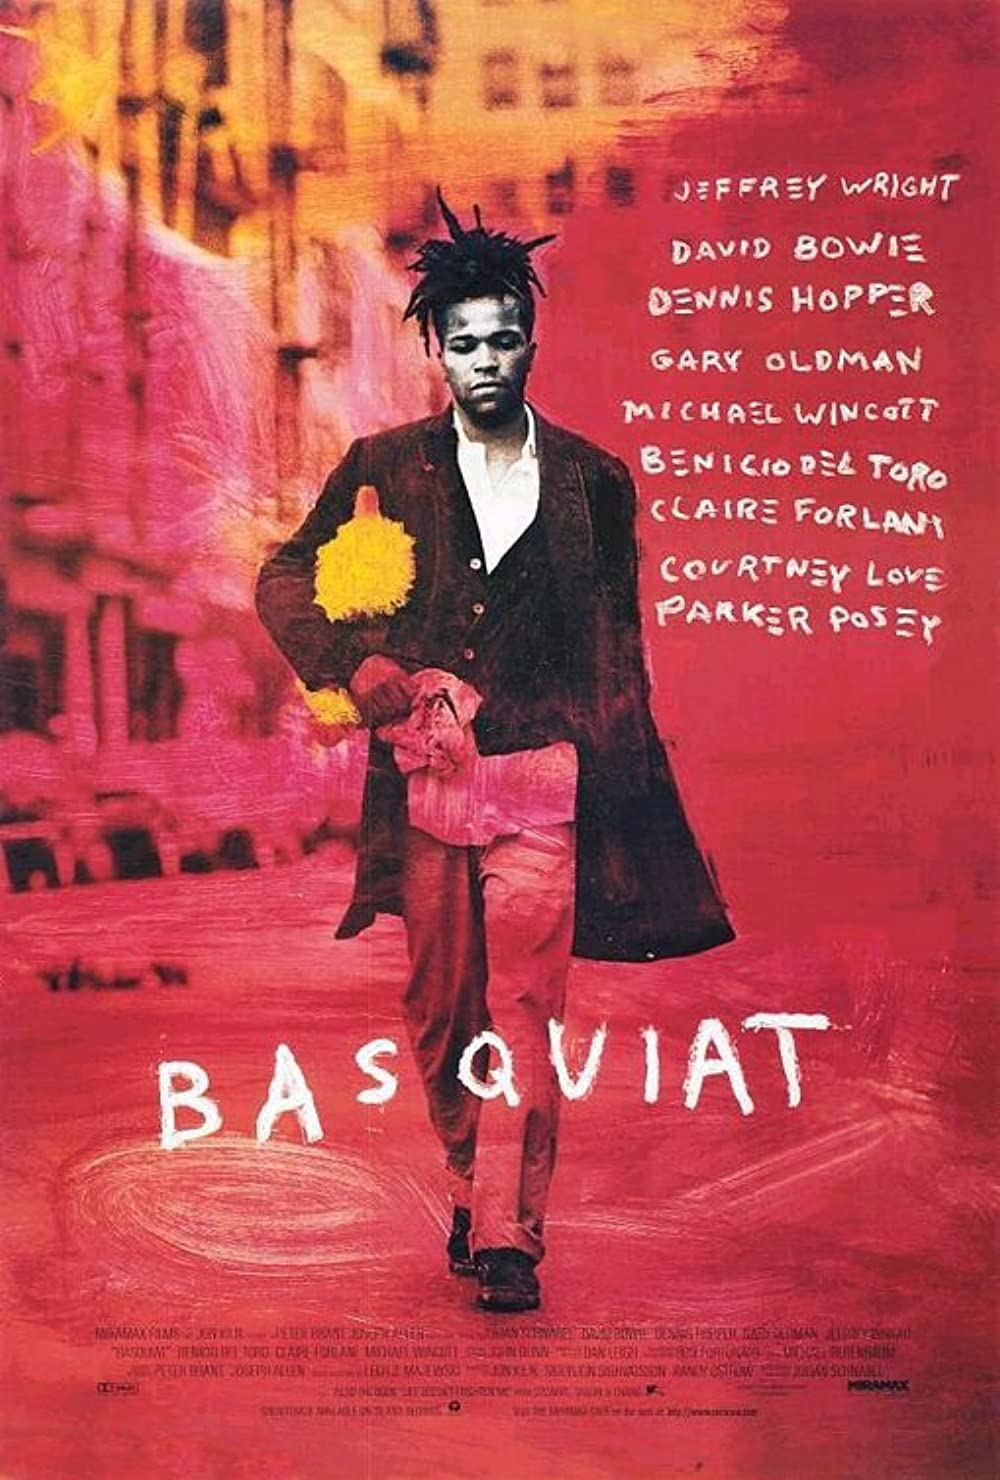 Filmbeschreibung zu Basquiat (OV)